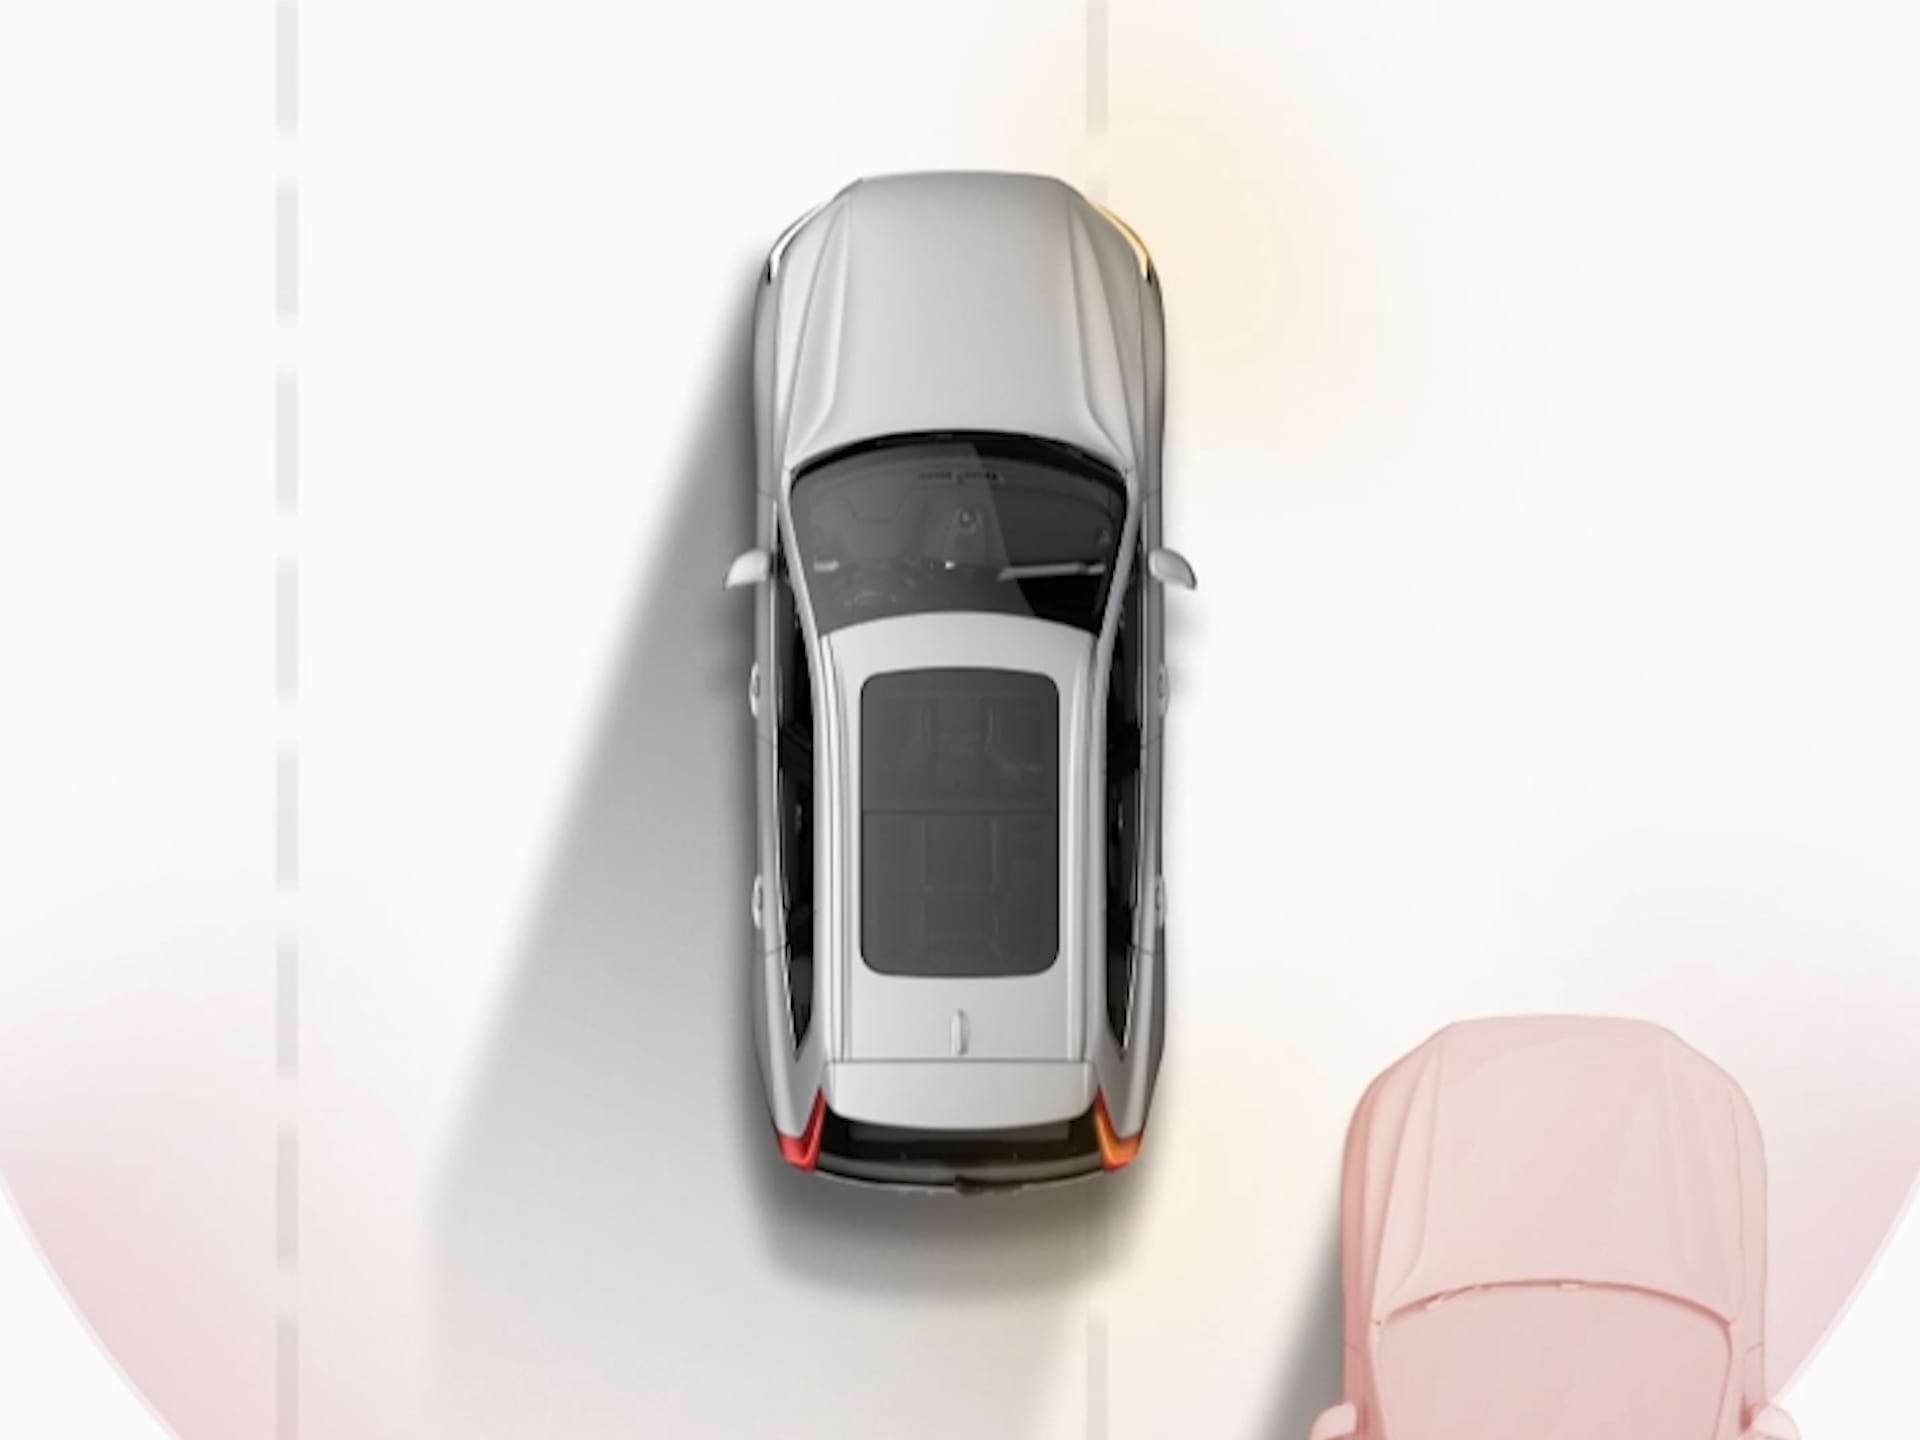 Kuvituskuvassa ylhäältä kuvattu Volvo-auto, joka ajaa muiden ajoneuvojen rinnalla.